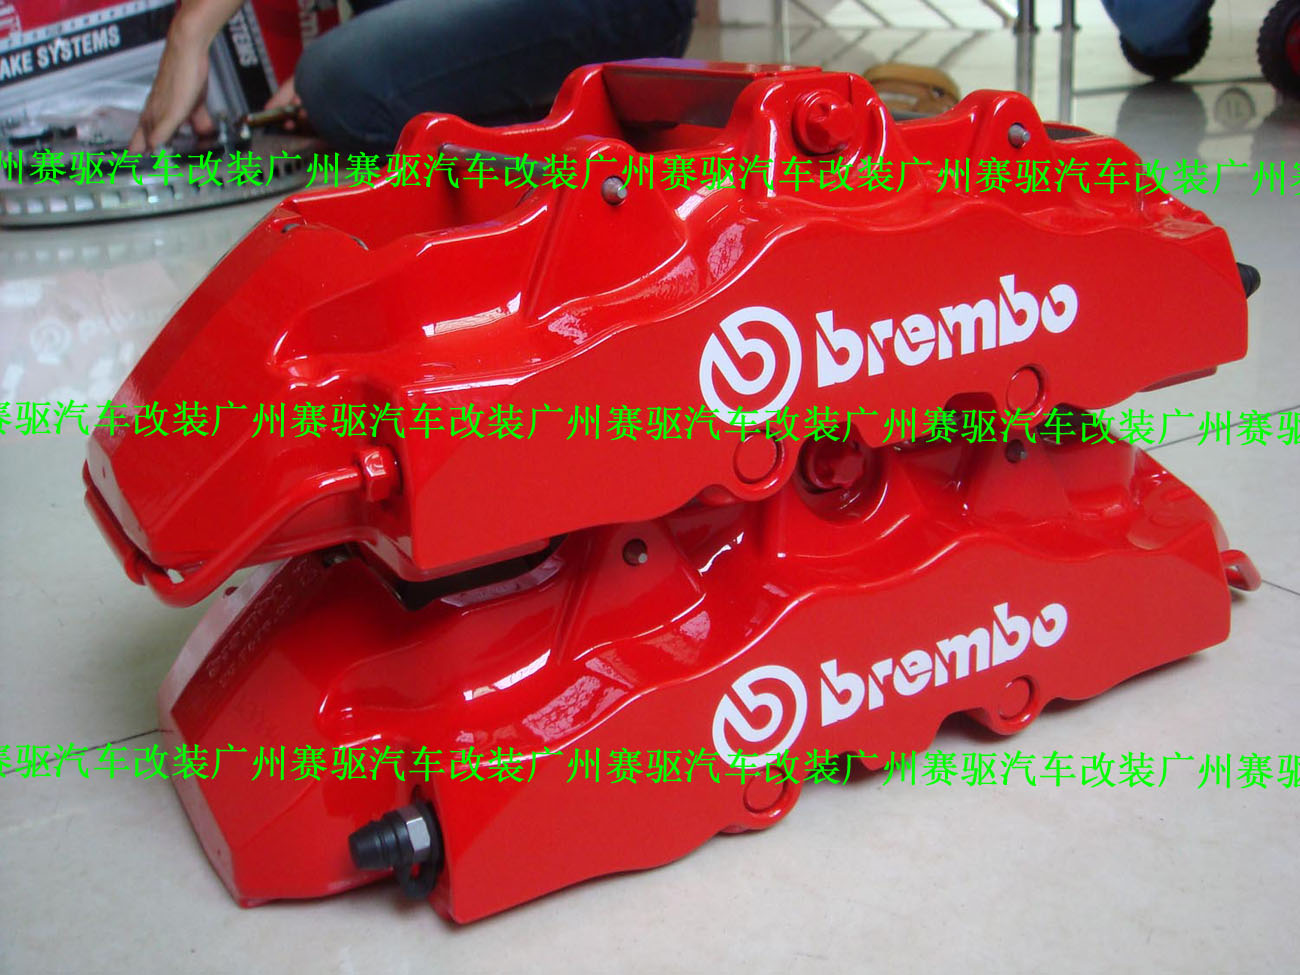 意大利BREMBO原装进口8活塞卡钳专用高性能刹车片 耐高温、耐磨、摩擦系数大等特点